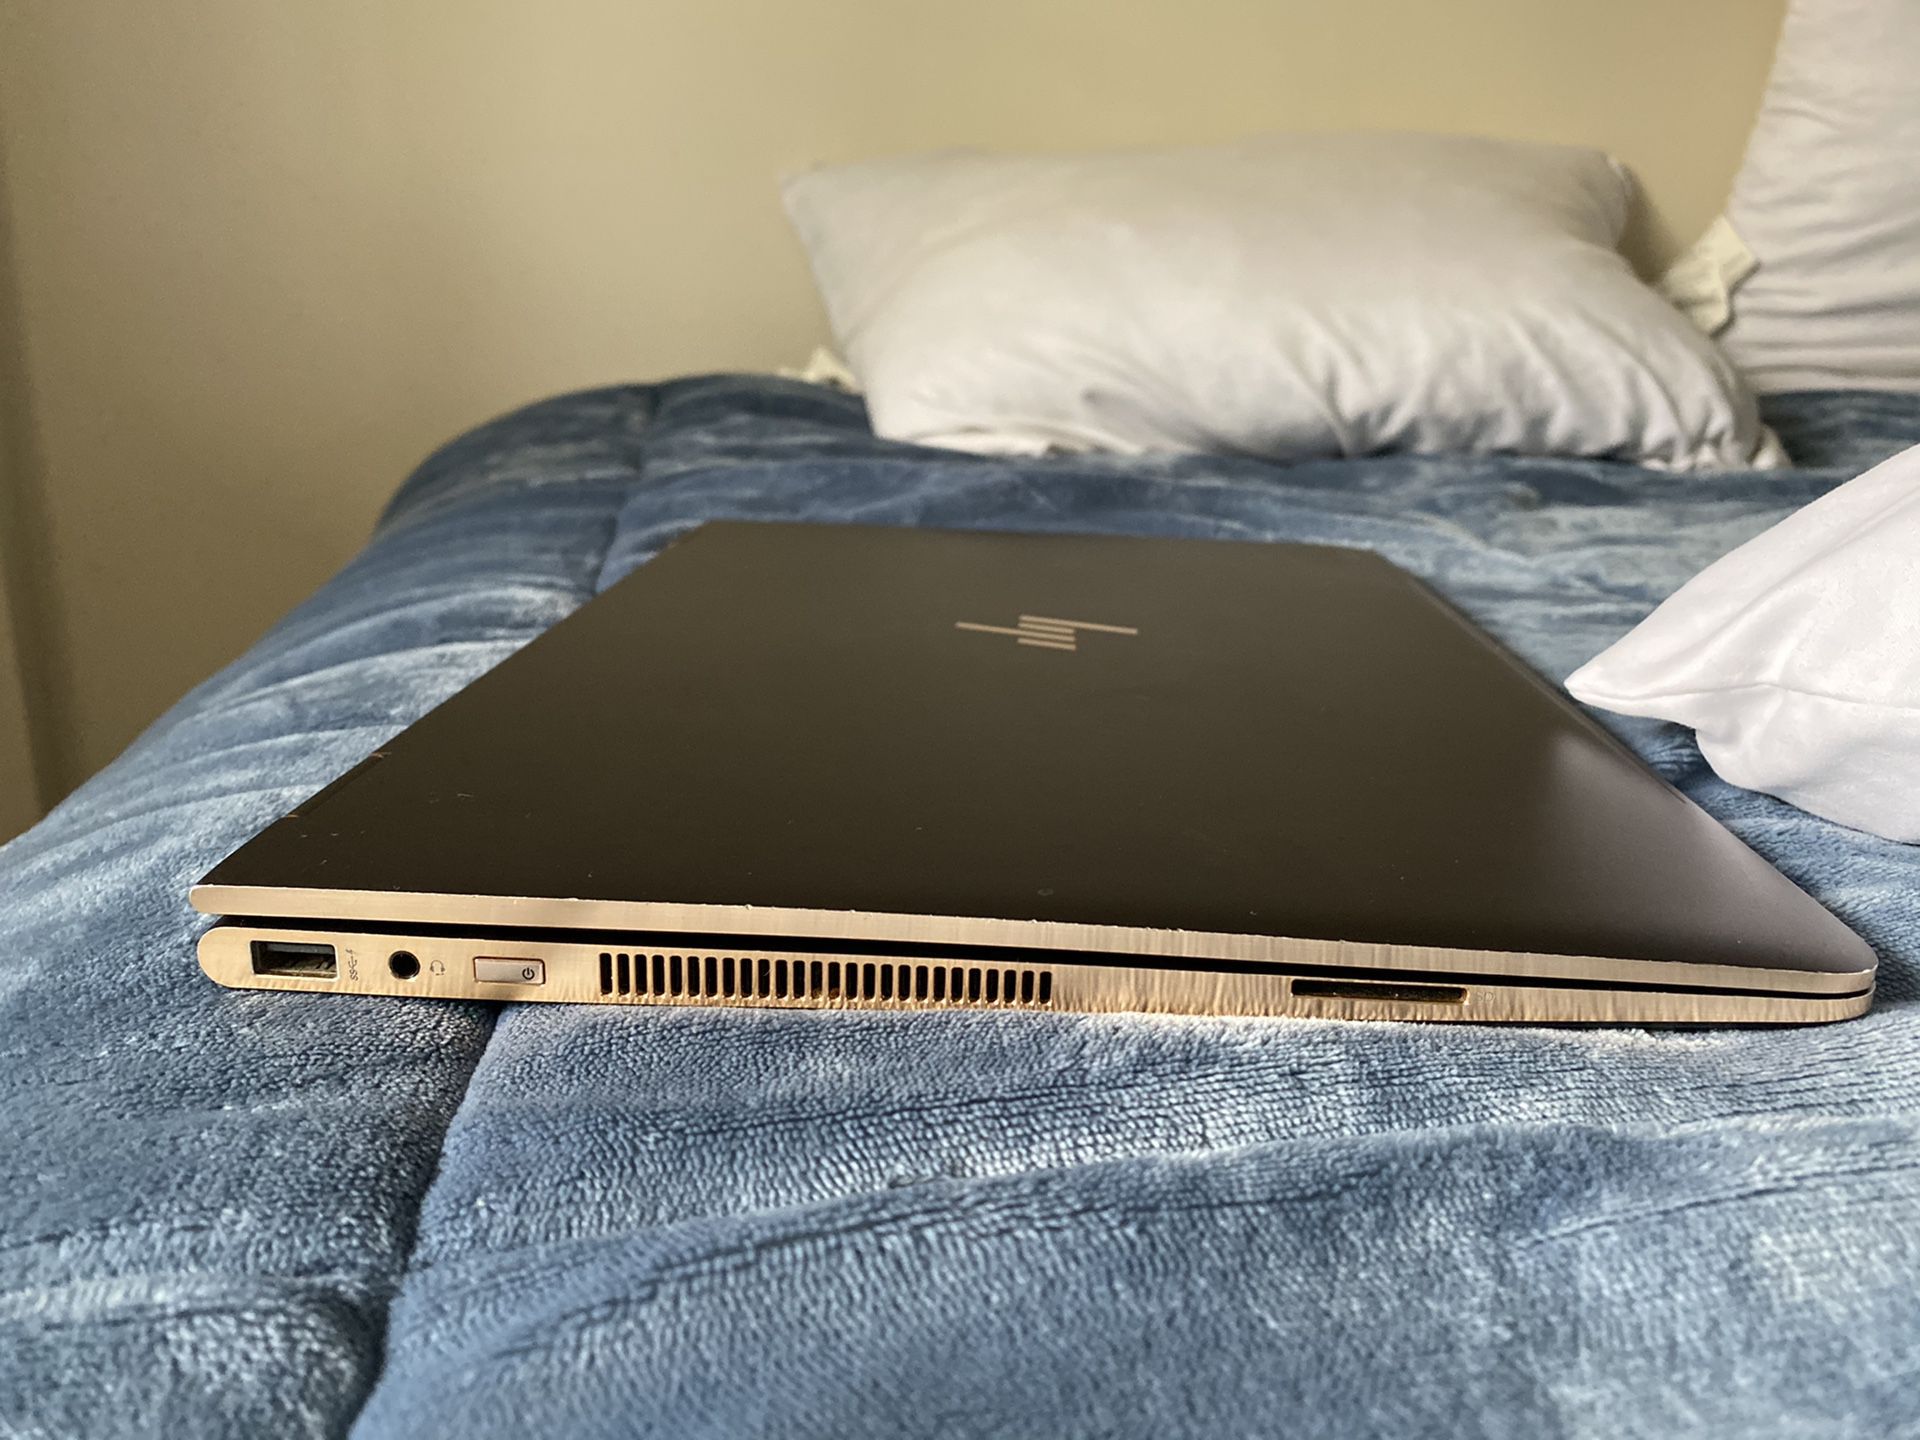 hp Spectre laptop 2019 model